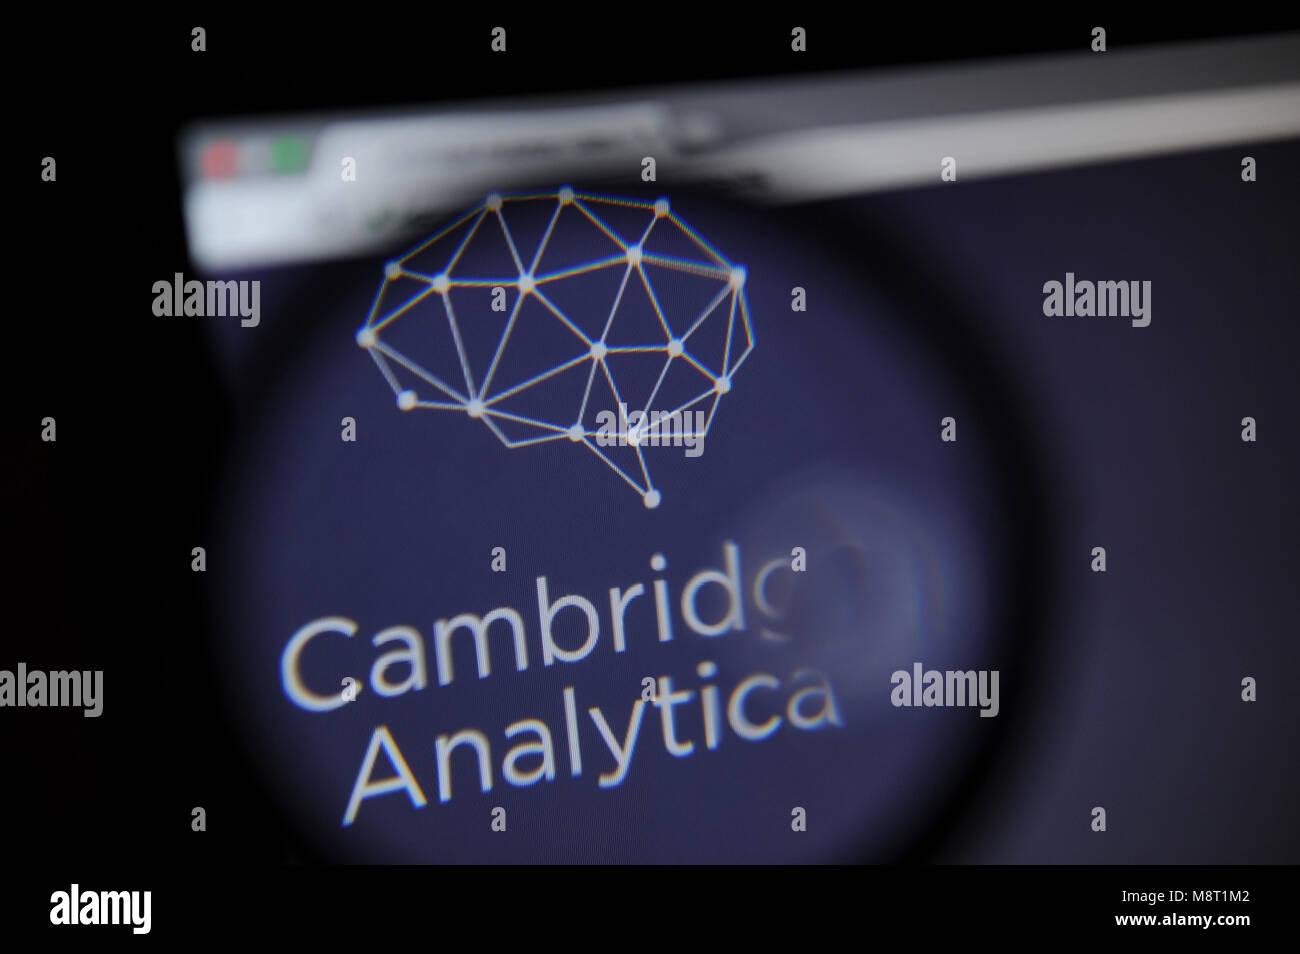 Le site web de l'Analytica Cambridge est vu à travers un verre magnifiying Banque D'Images